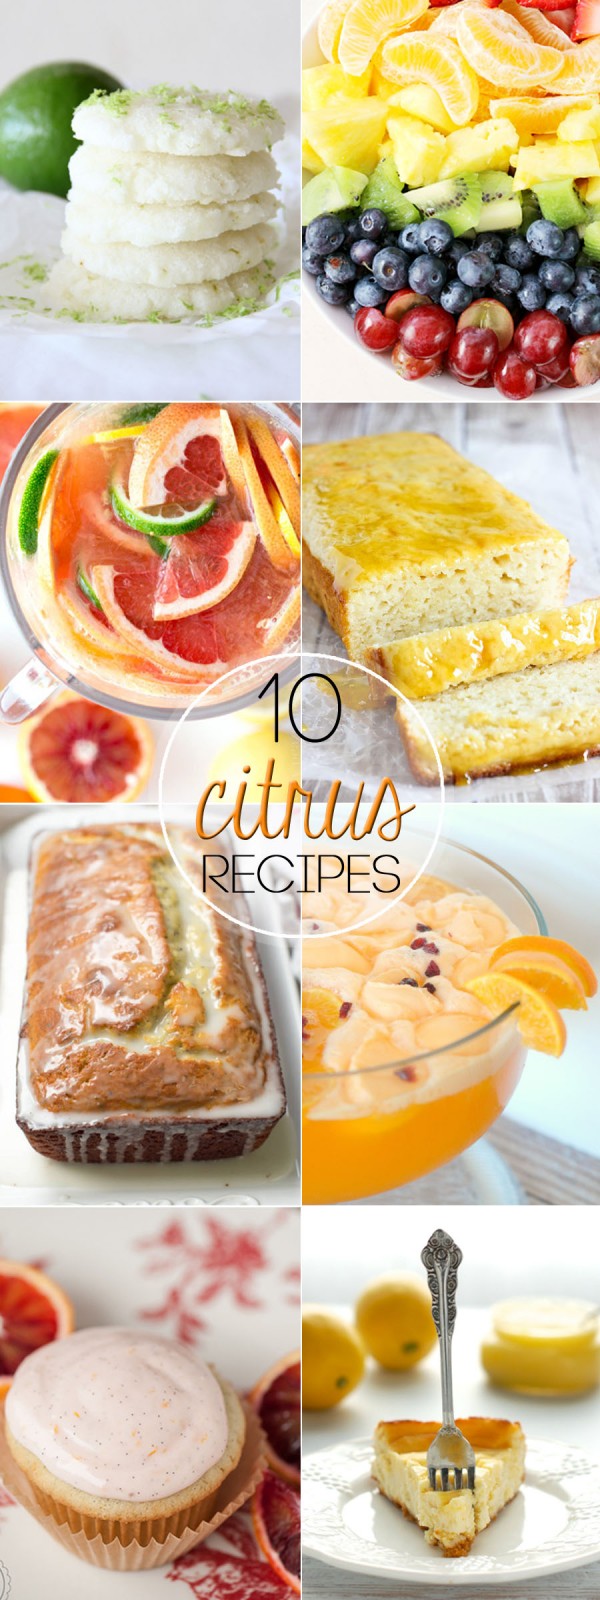 10 Citrus Recipes